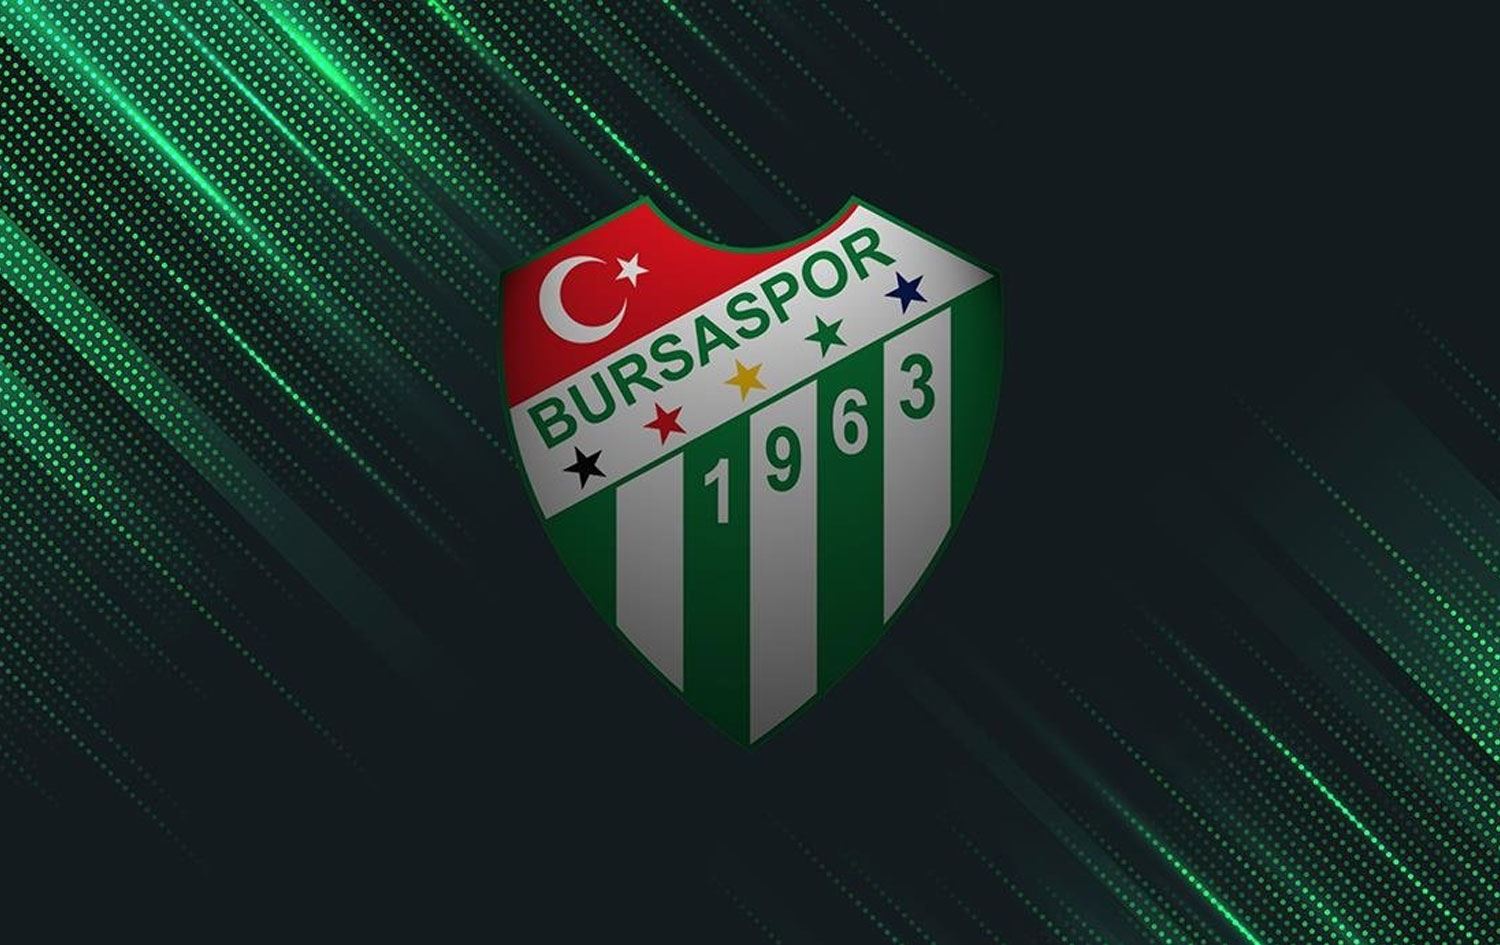 Bursaspor’un kongresi haftaya ertelendi! Raşit Barışıcı; “Takımı önce ligde tutacağız sonrasındaki hedef Süper Lig!